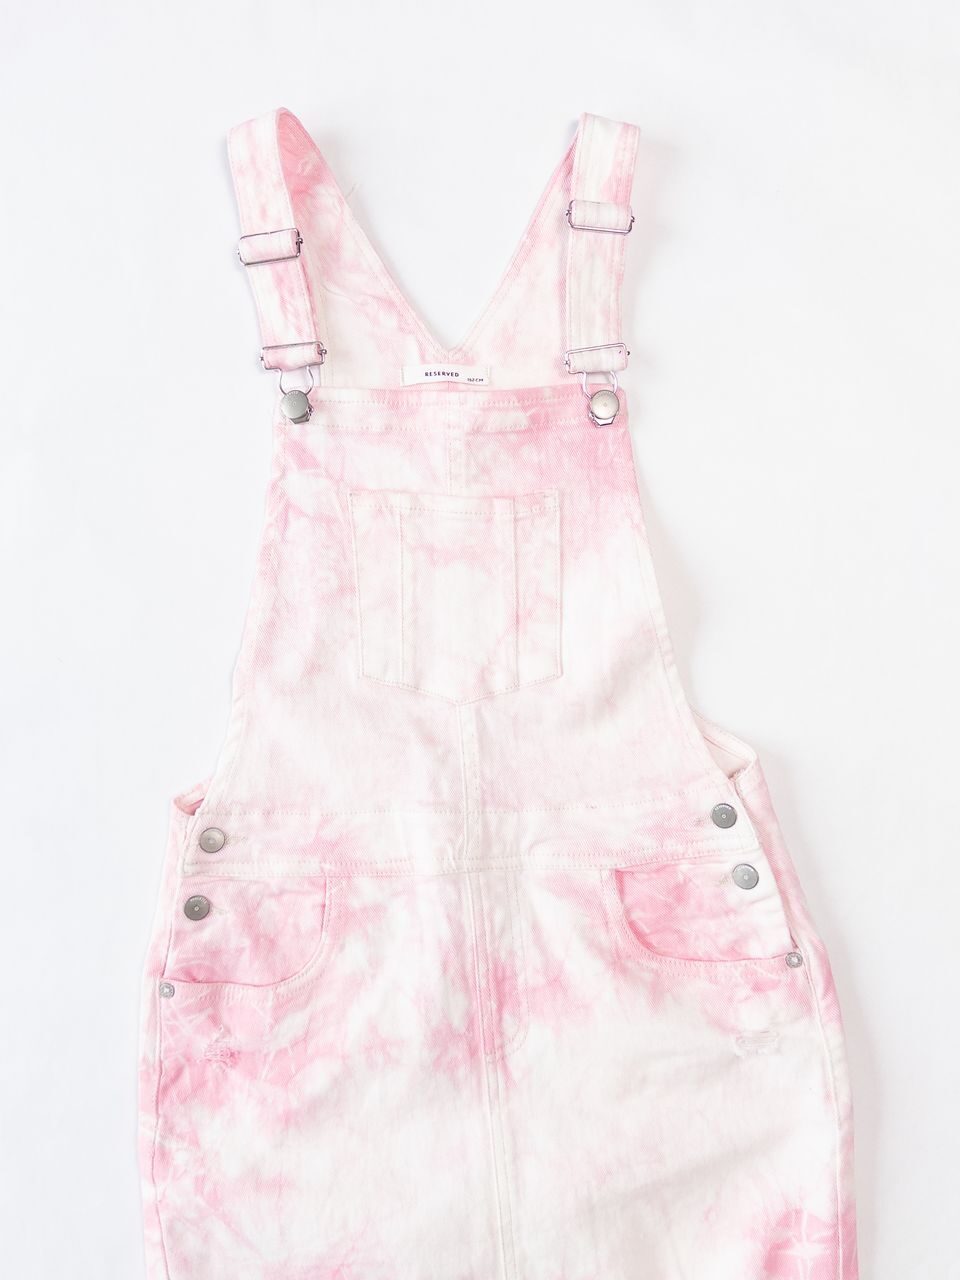 Джинсовый сарафан для девочки на регулируемых бретелях/карманами цвет розовый/белый рост 152 см RESERVED